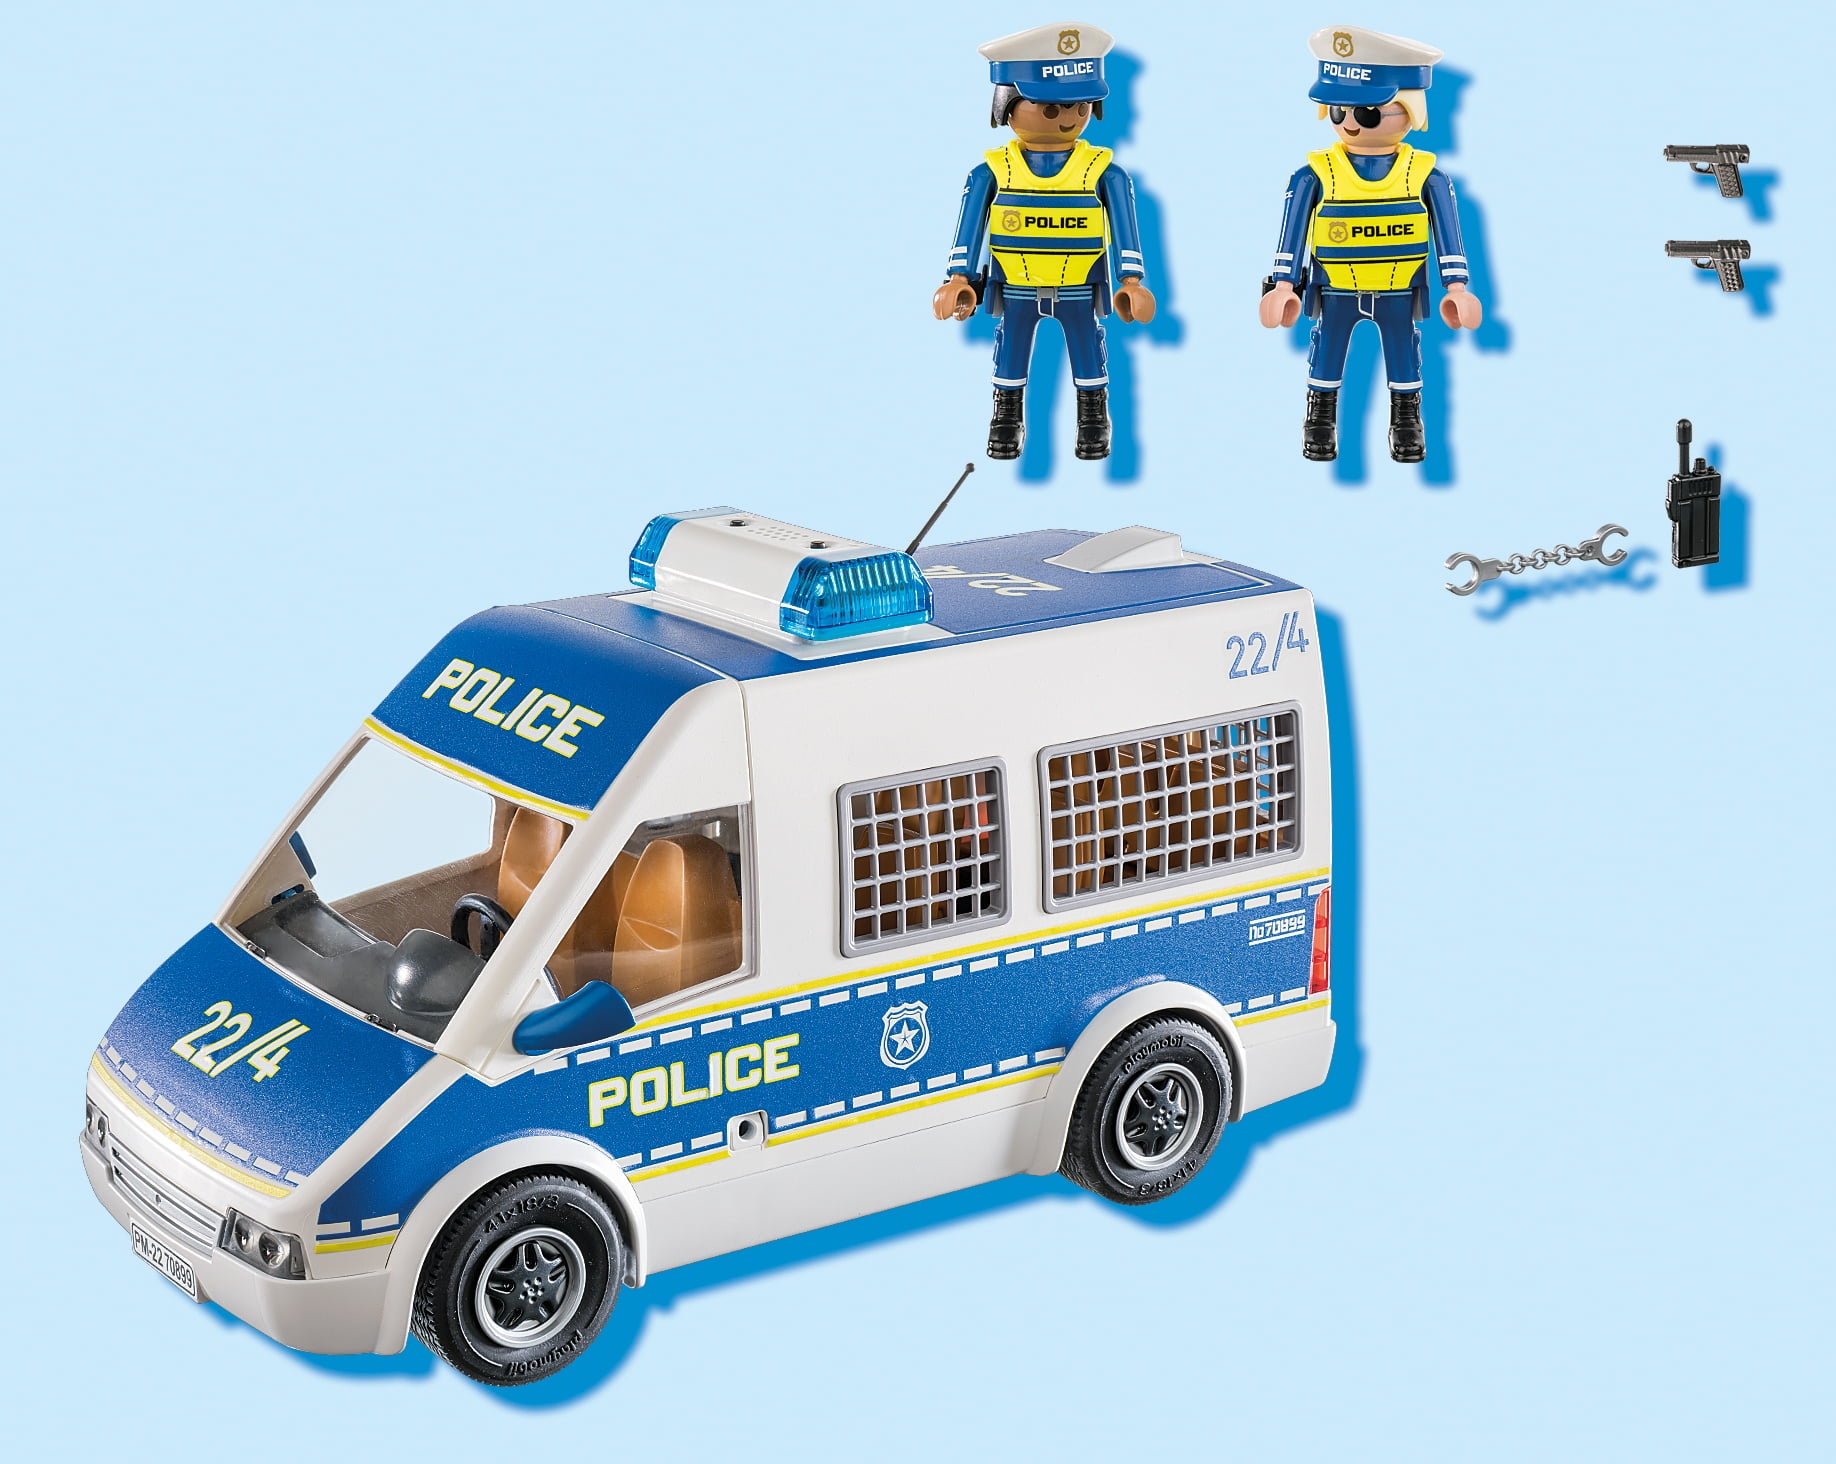 Police Van with Sound - Walmart.com